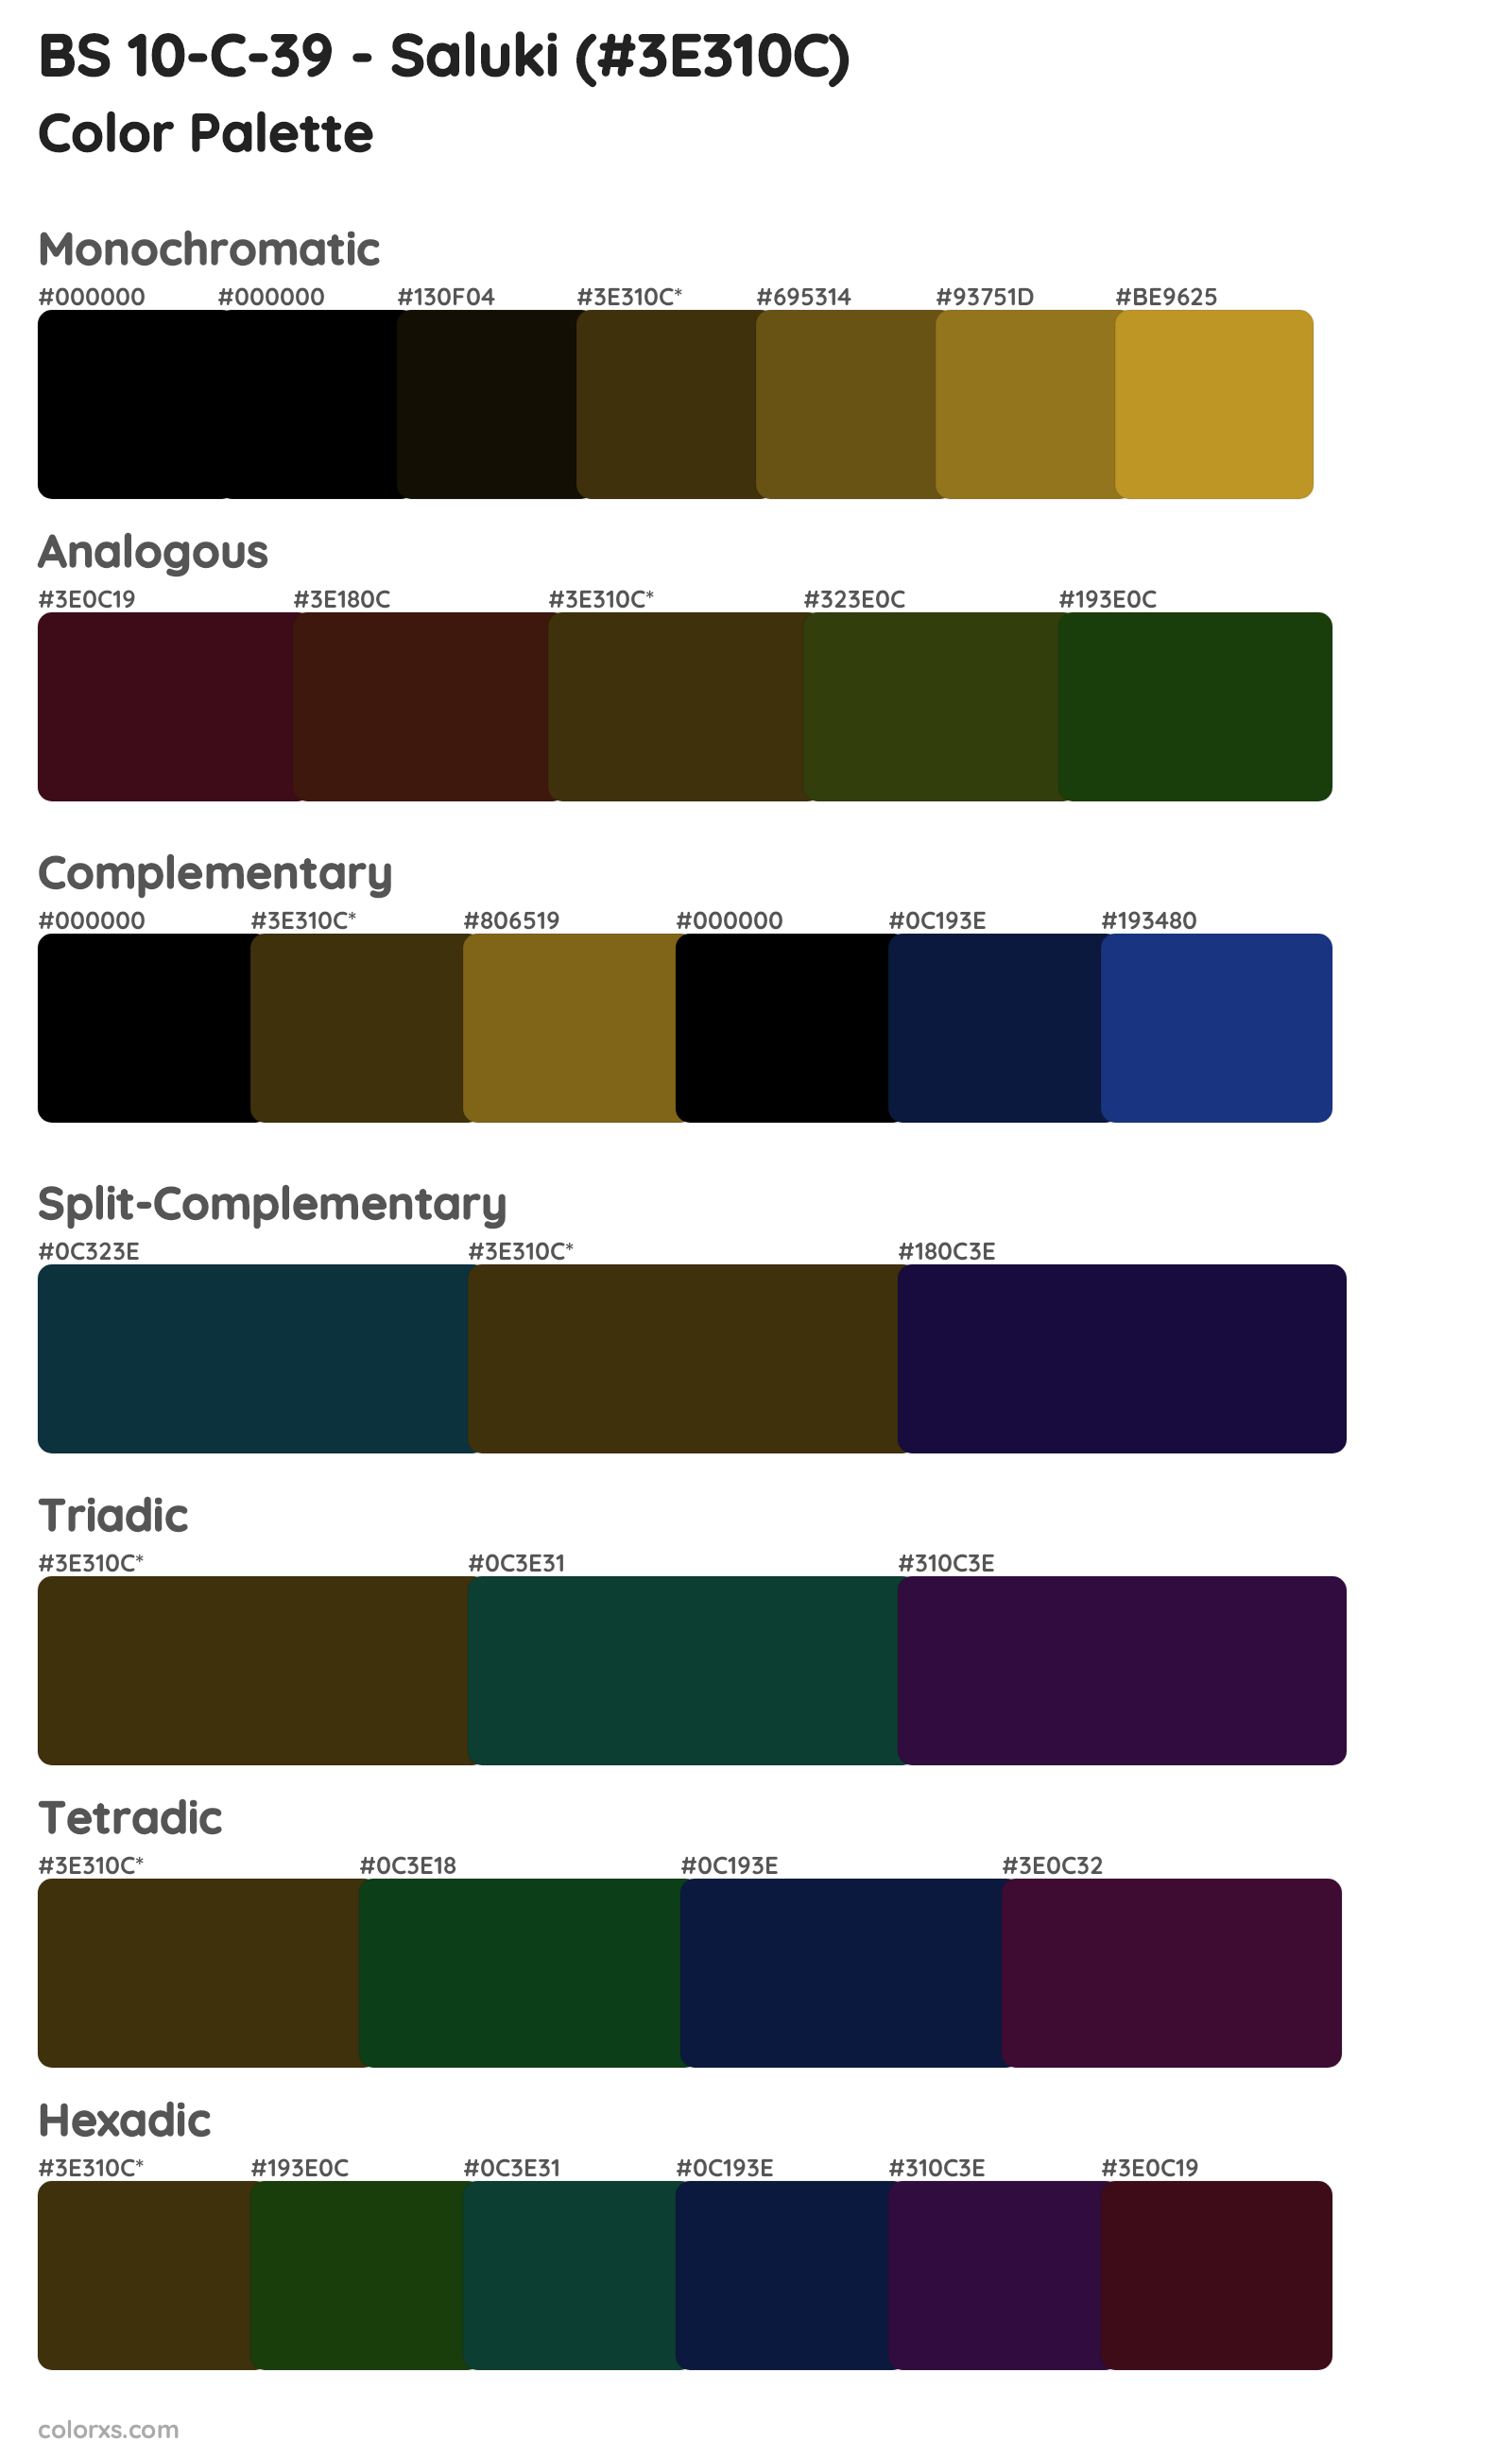 BS 10-C-39 - Saluki Color Scheme Palettes